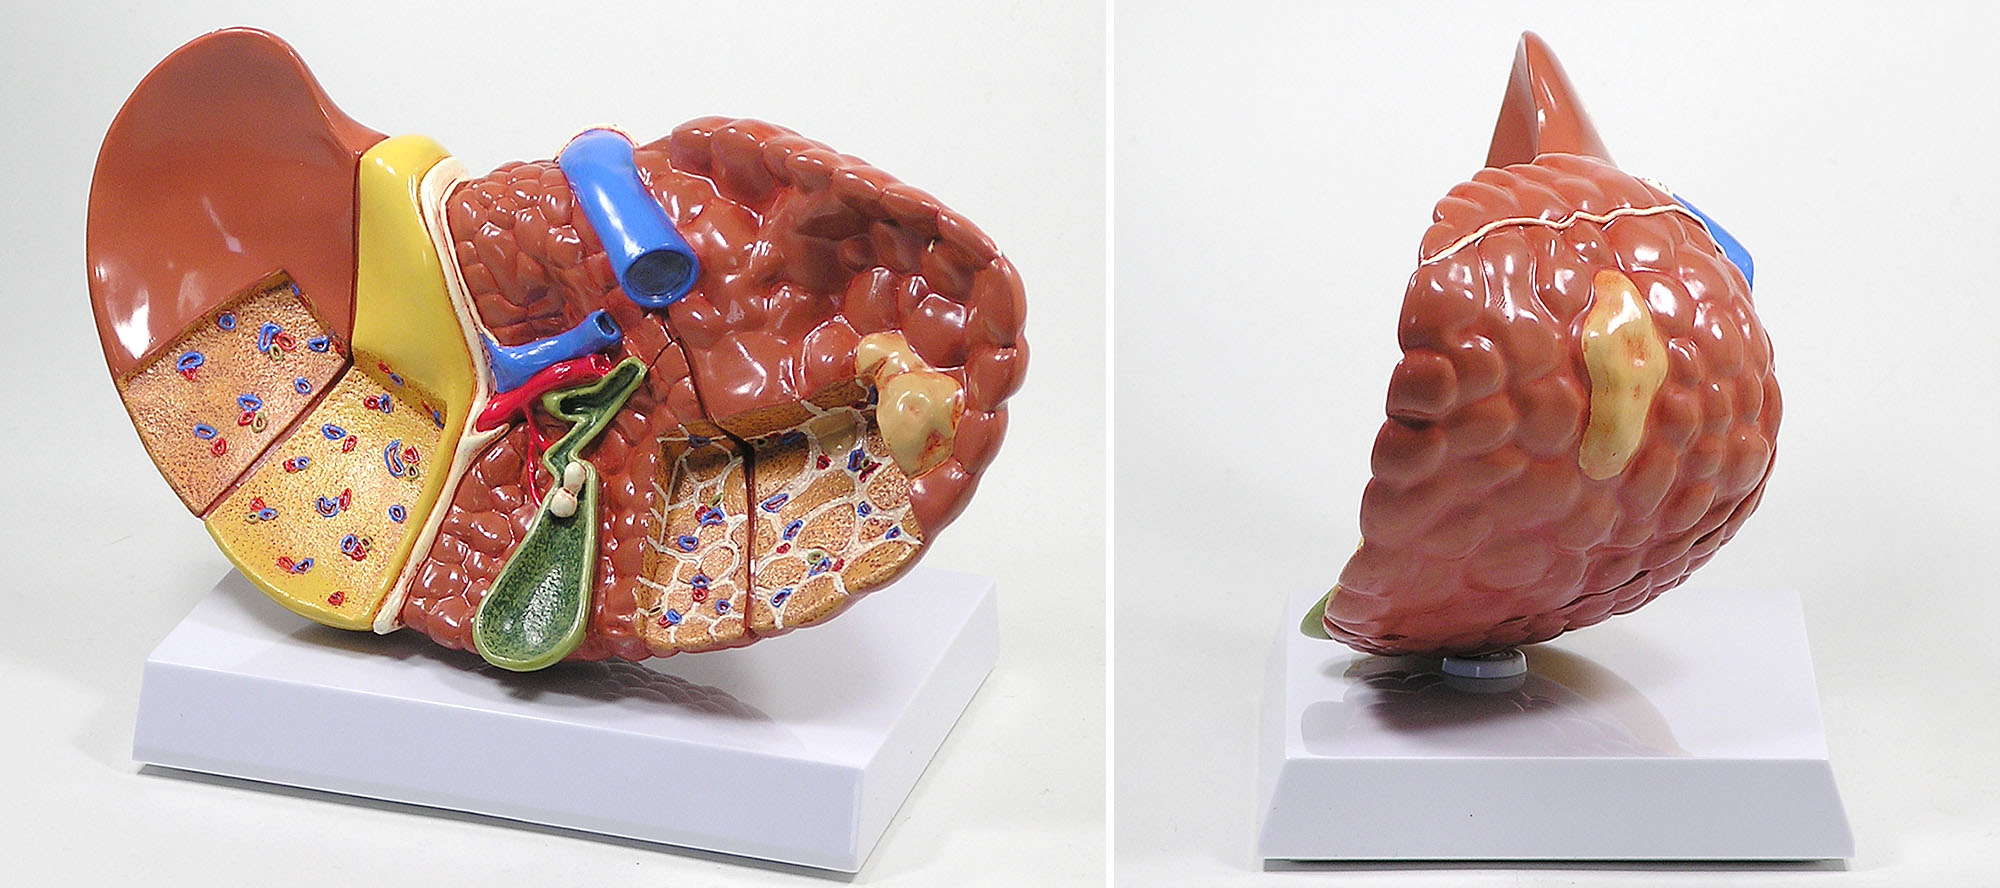 人体模型 肝臓と諸疾患